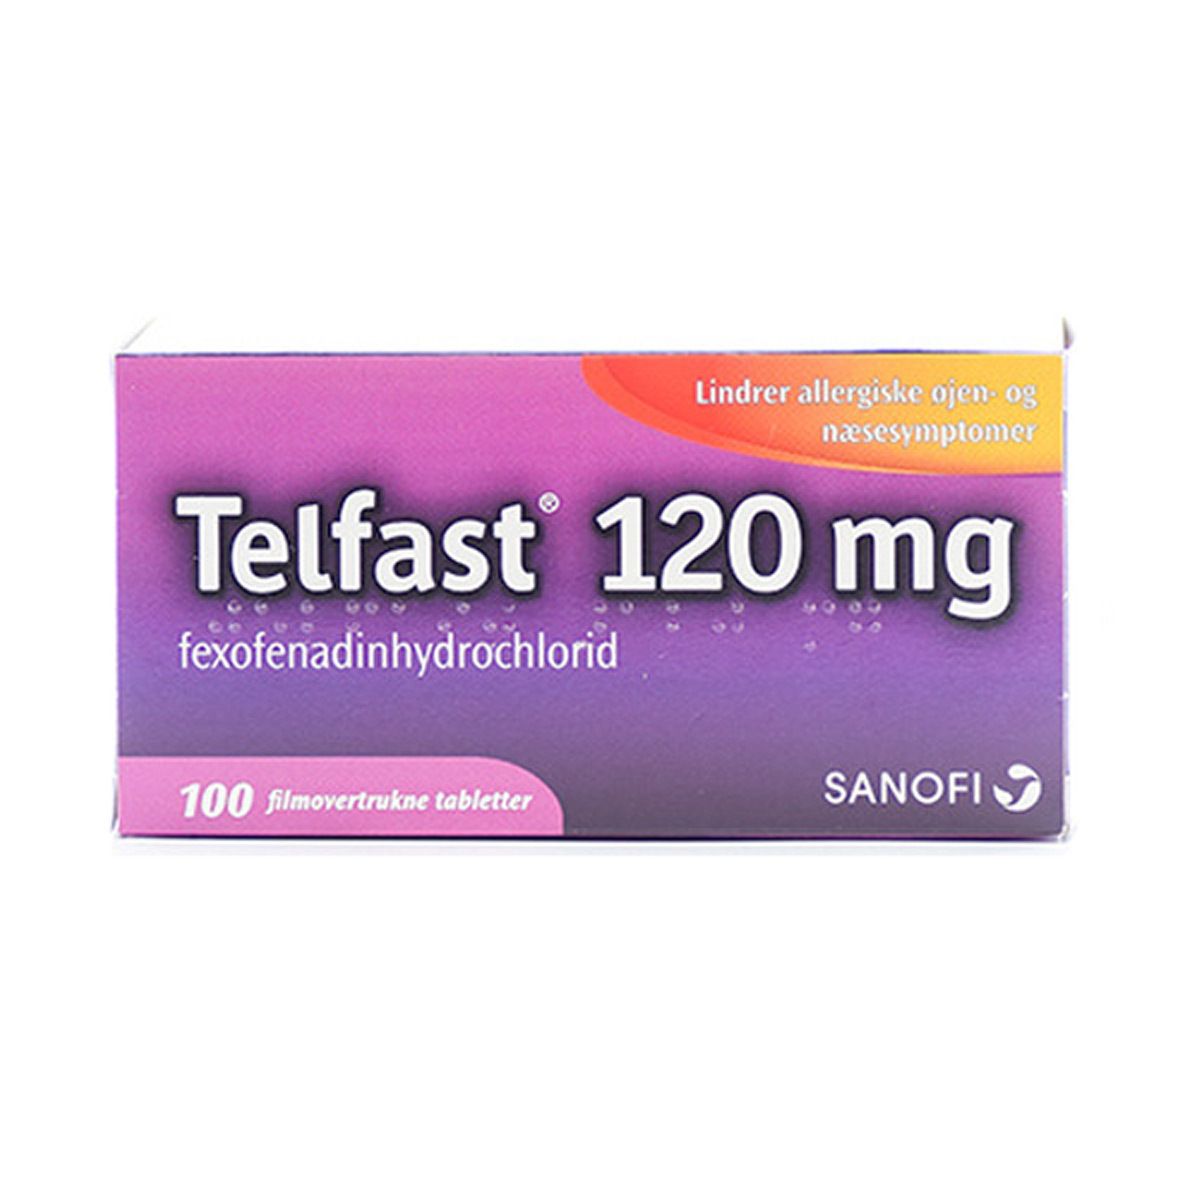 Telfast 120 mg - 100 stk. - Med24.dk